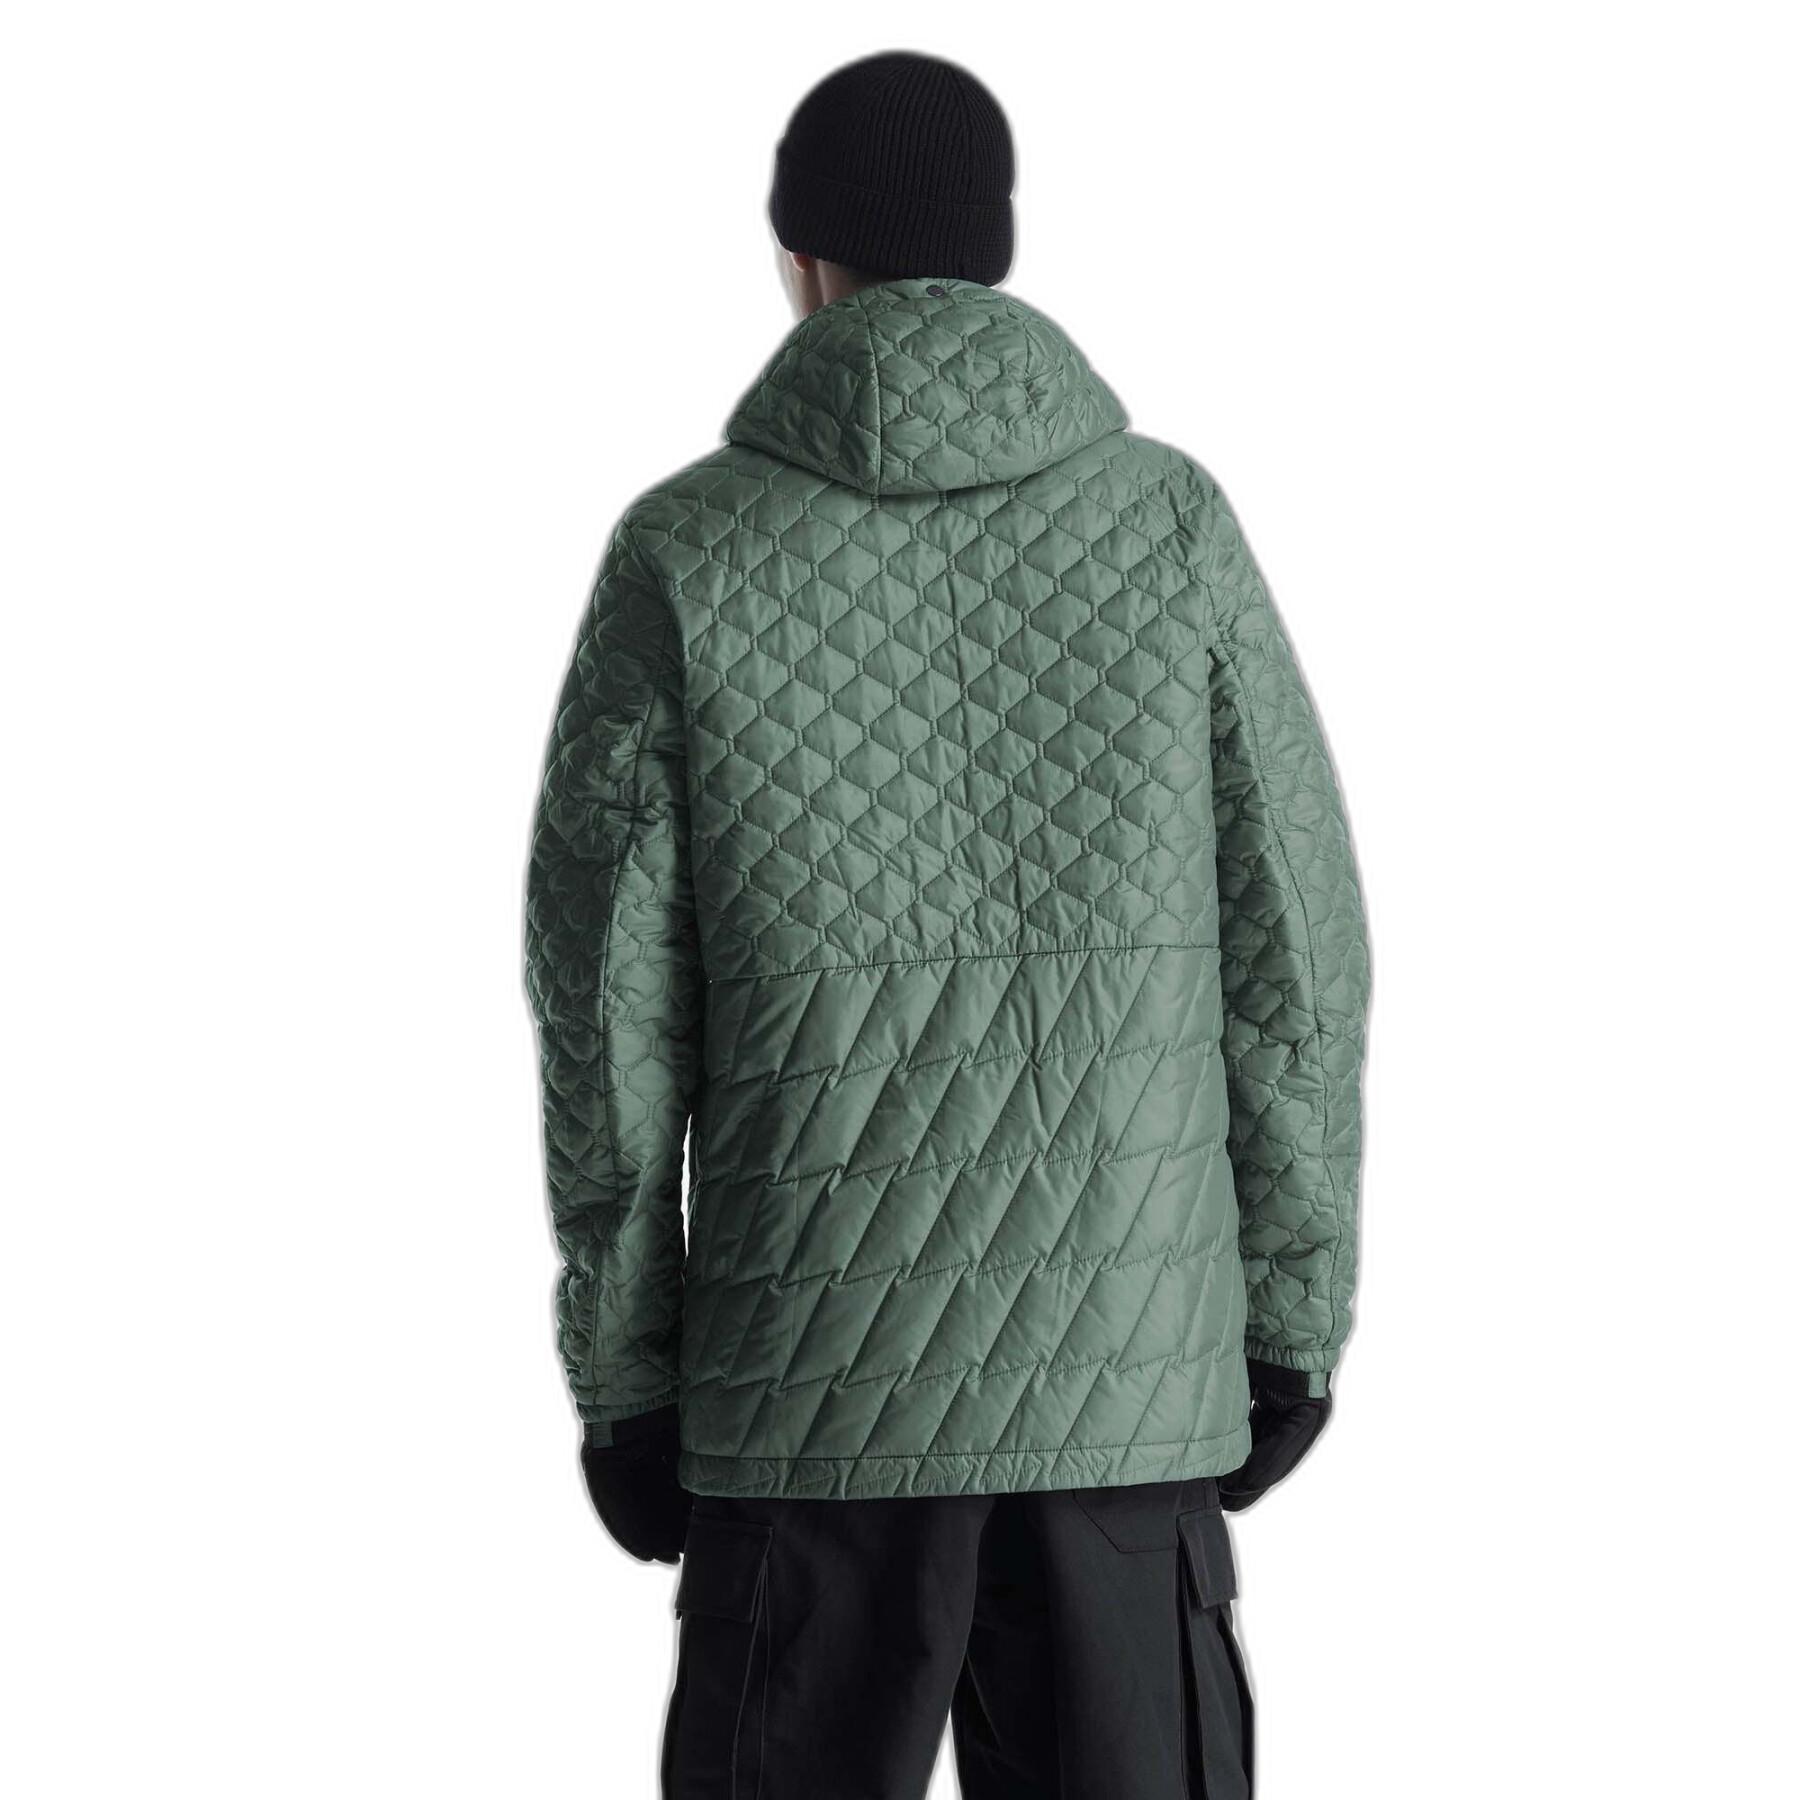 Waterproof jacket Krakatau Qm434